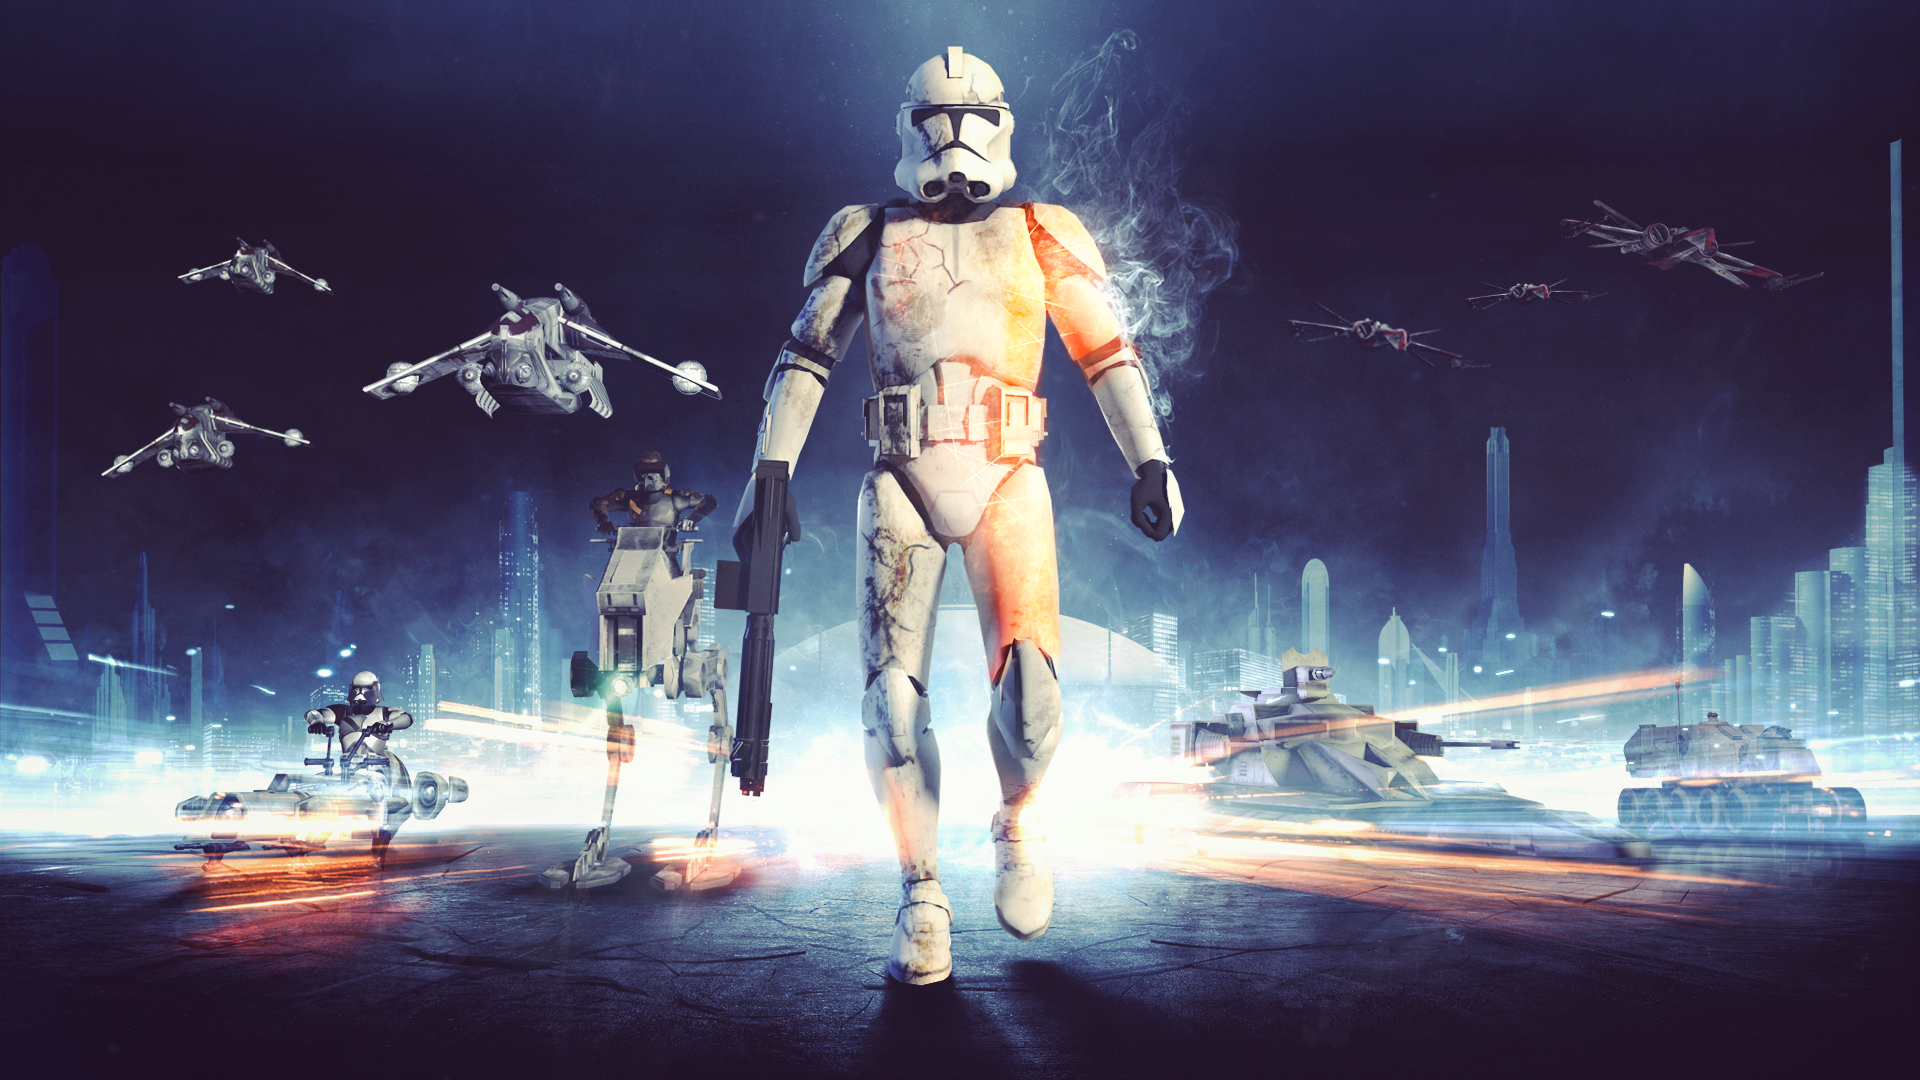 War Star Wars Battlefront Soldier Star Wars Clone Trooper Star Wars The Clone Wars Weapon Battle Fie 1920x1080